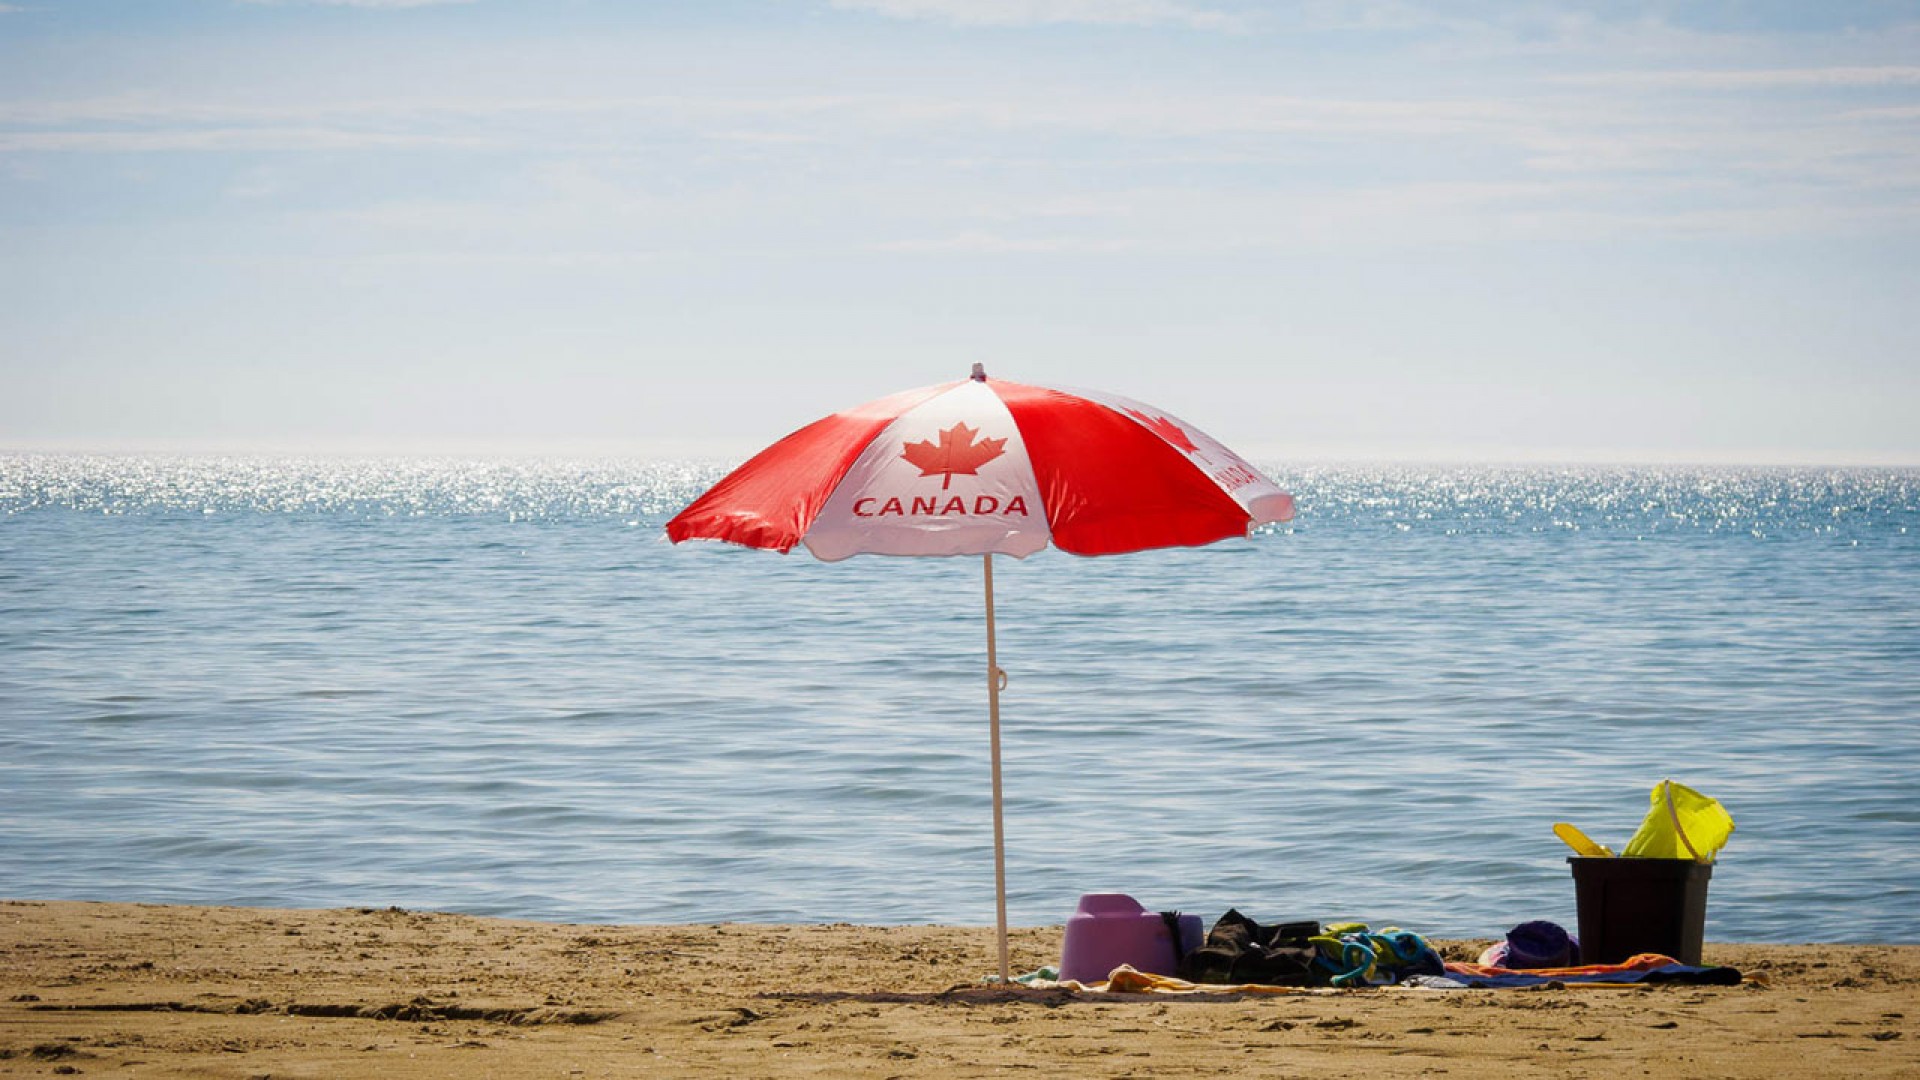 Khám phá cuộc sống ở Canada qua 10 bãi biển tuyệt đẹp